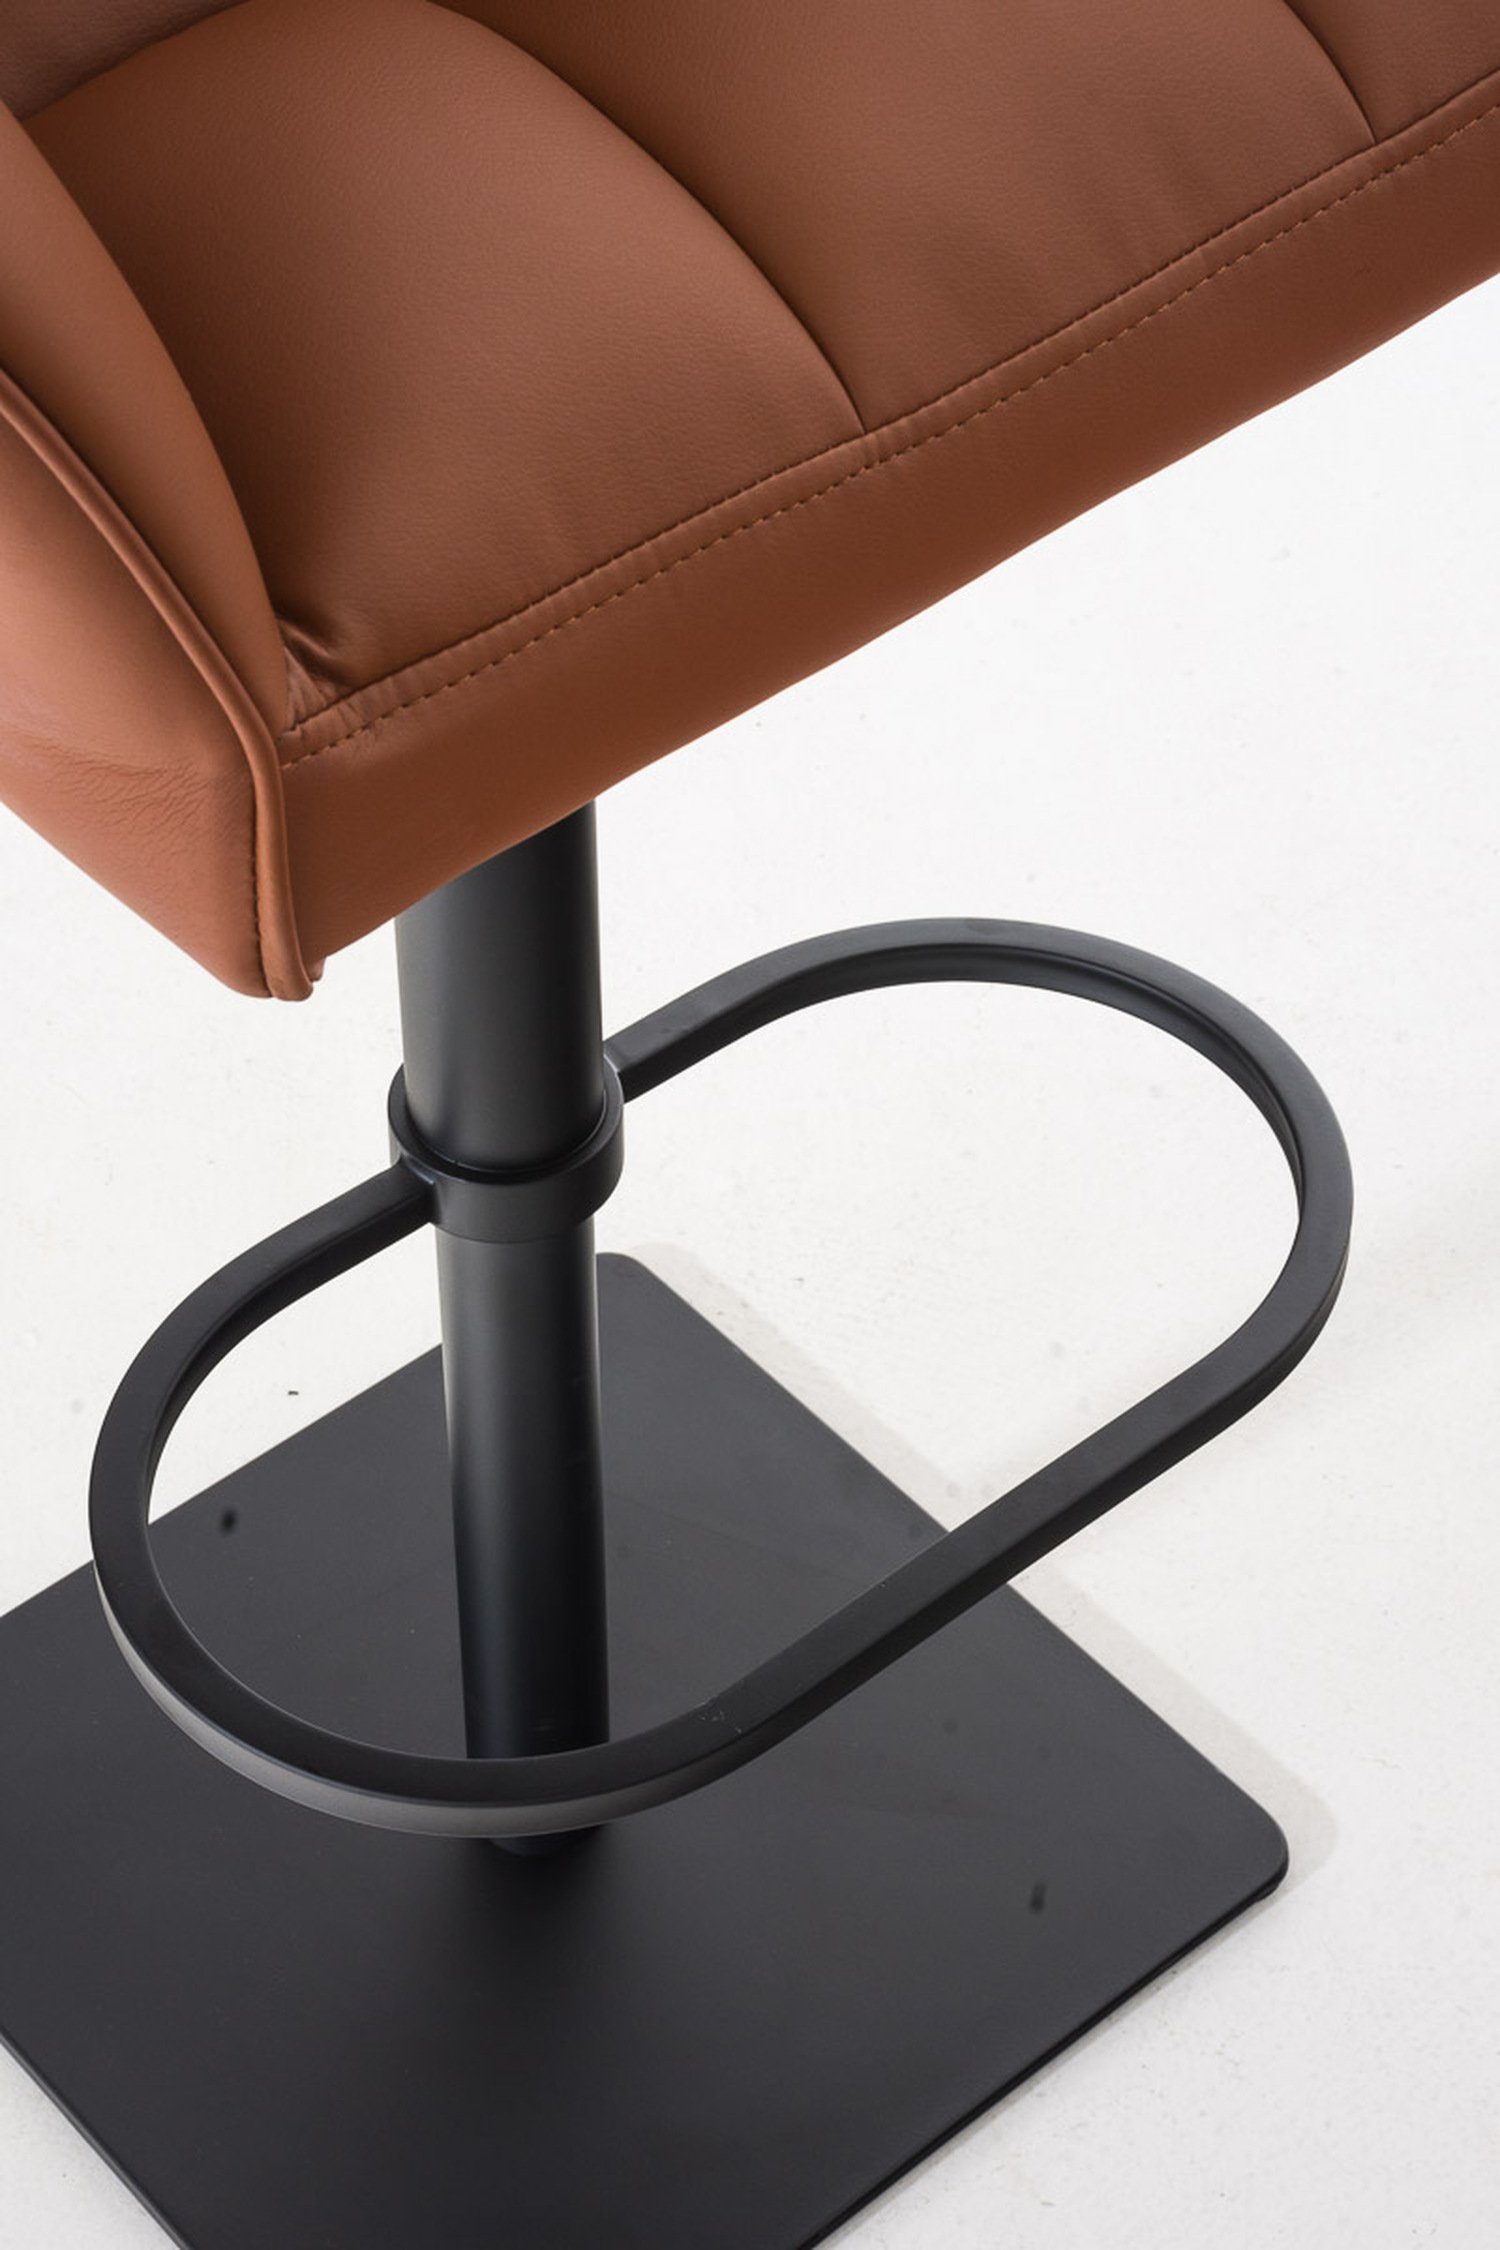 & (mit Damaso 360° - Kunstleder schwarz Metall drehbar TPFLiving Hellbraun Barhocker Fußstütze und - Küche), Rückenlehne - Sitzfläche: für matt Hocker Theke